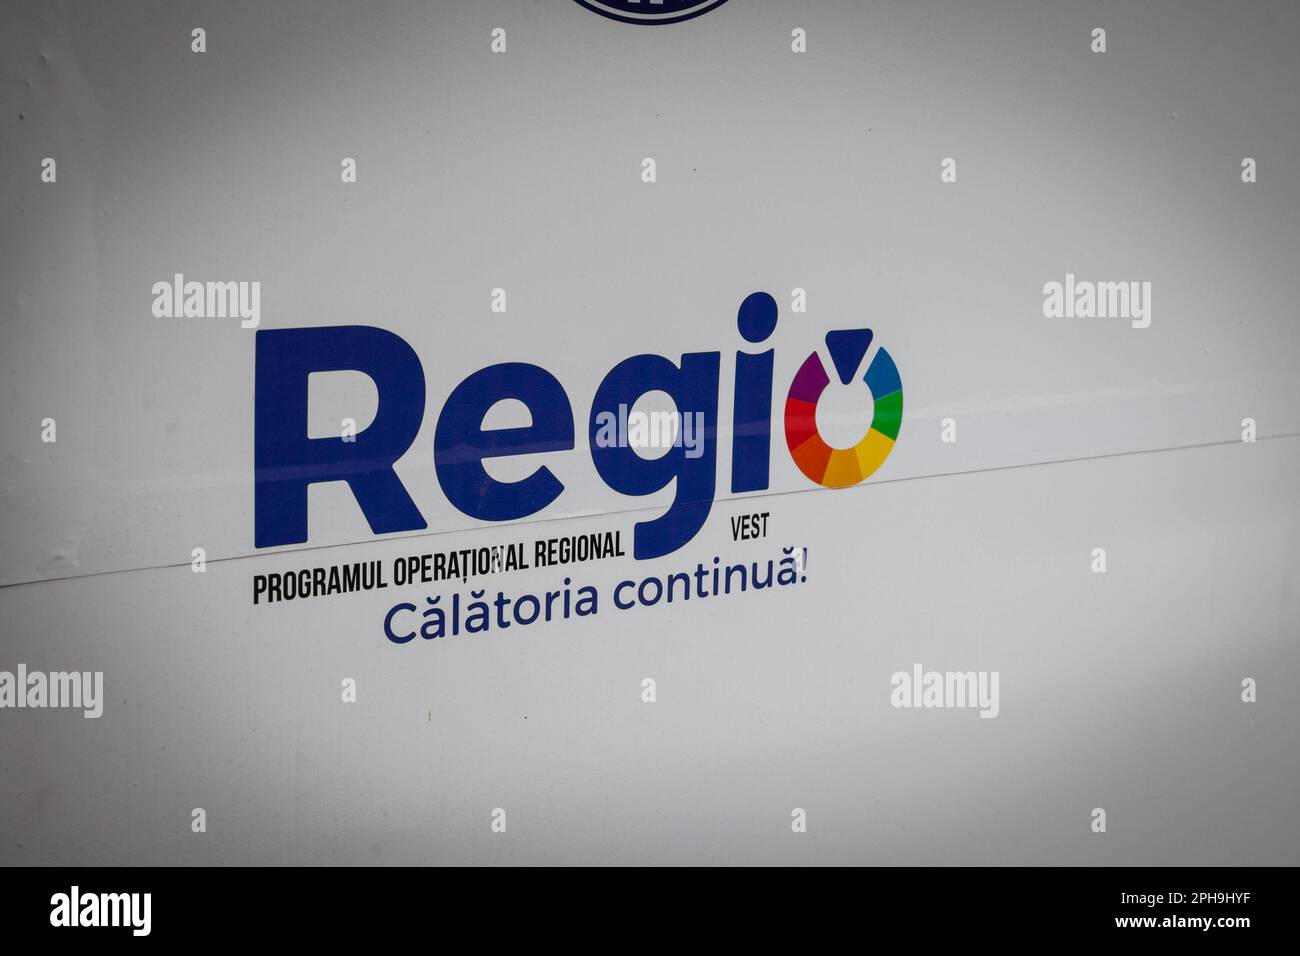 Immagine di un segno con il logo di Regio Programul Operational Regional su un segno in baile Herculane, Romania. Il programma operativo regionale ( por Foto Stock